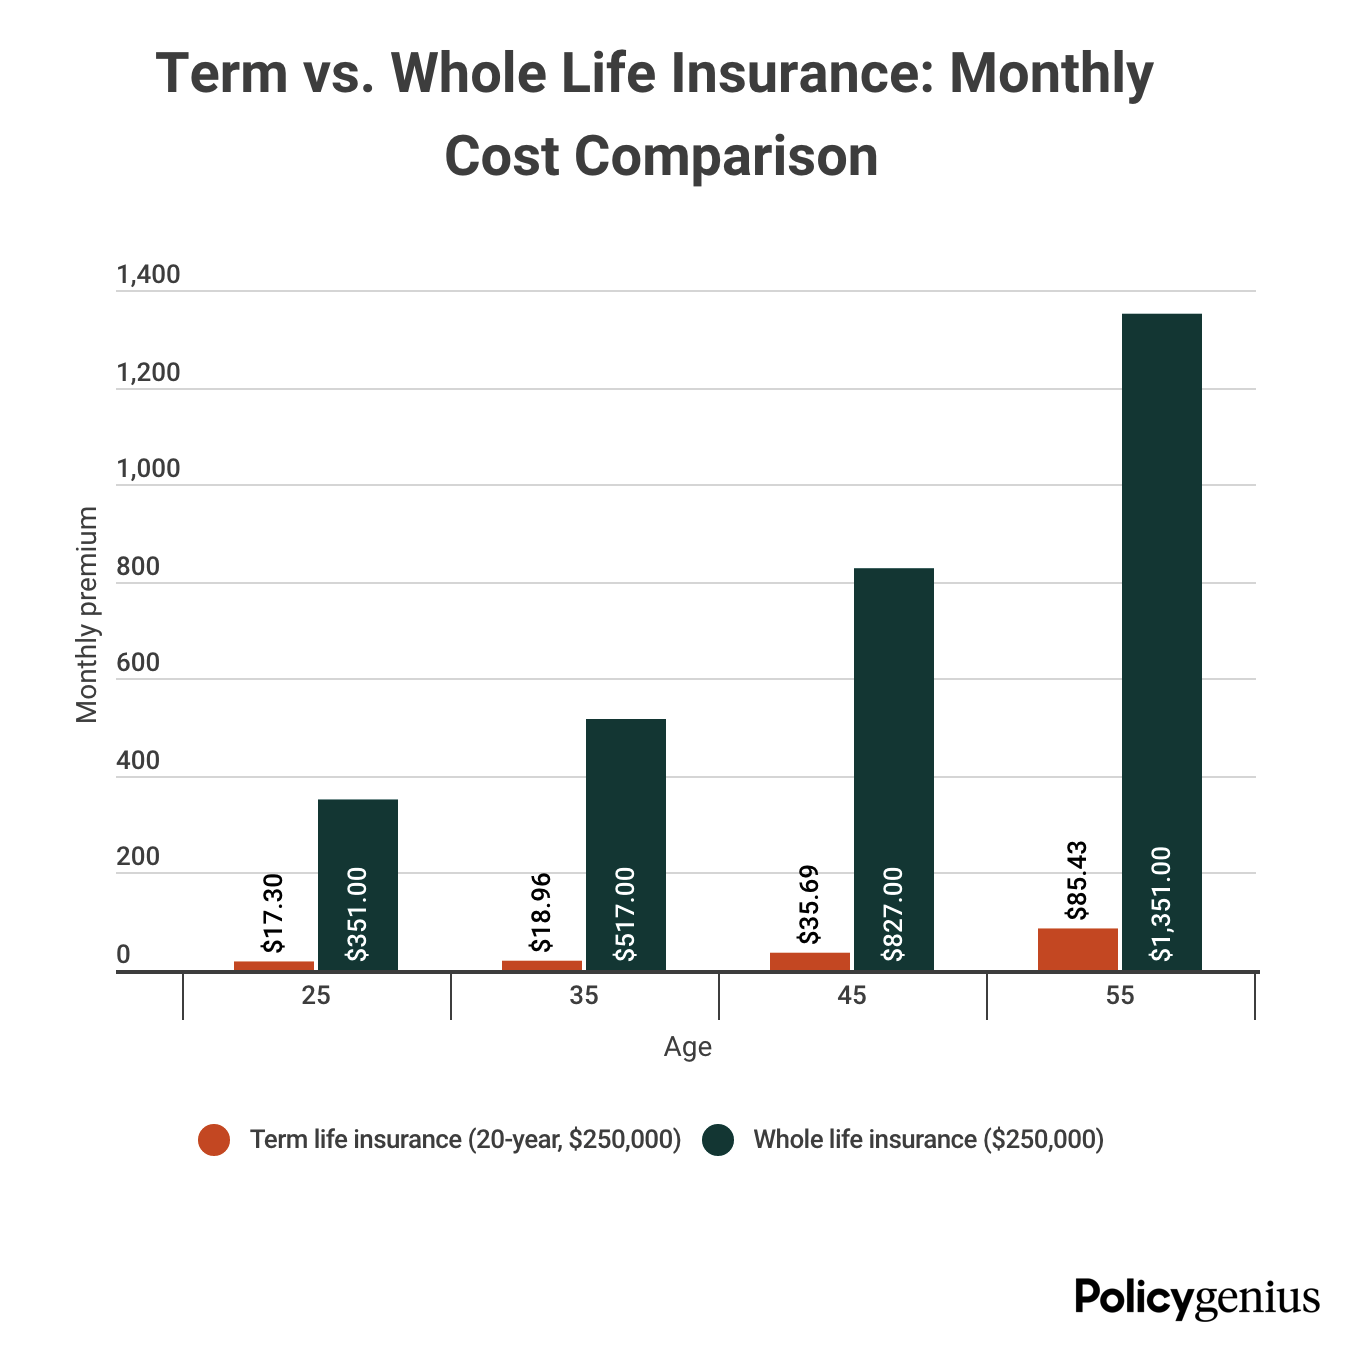 Term vs. Whole Life Insurance cost comparison